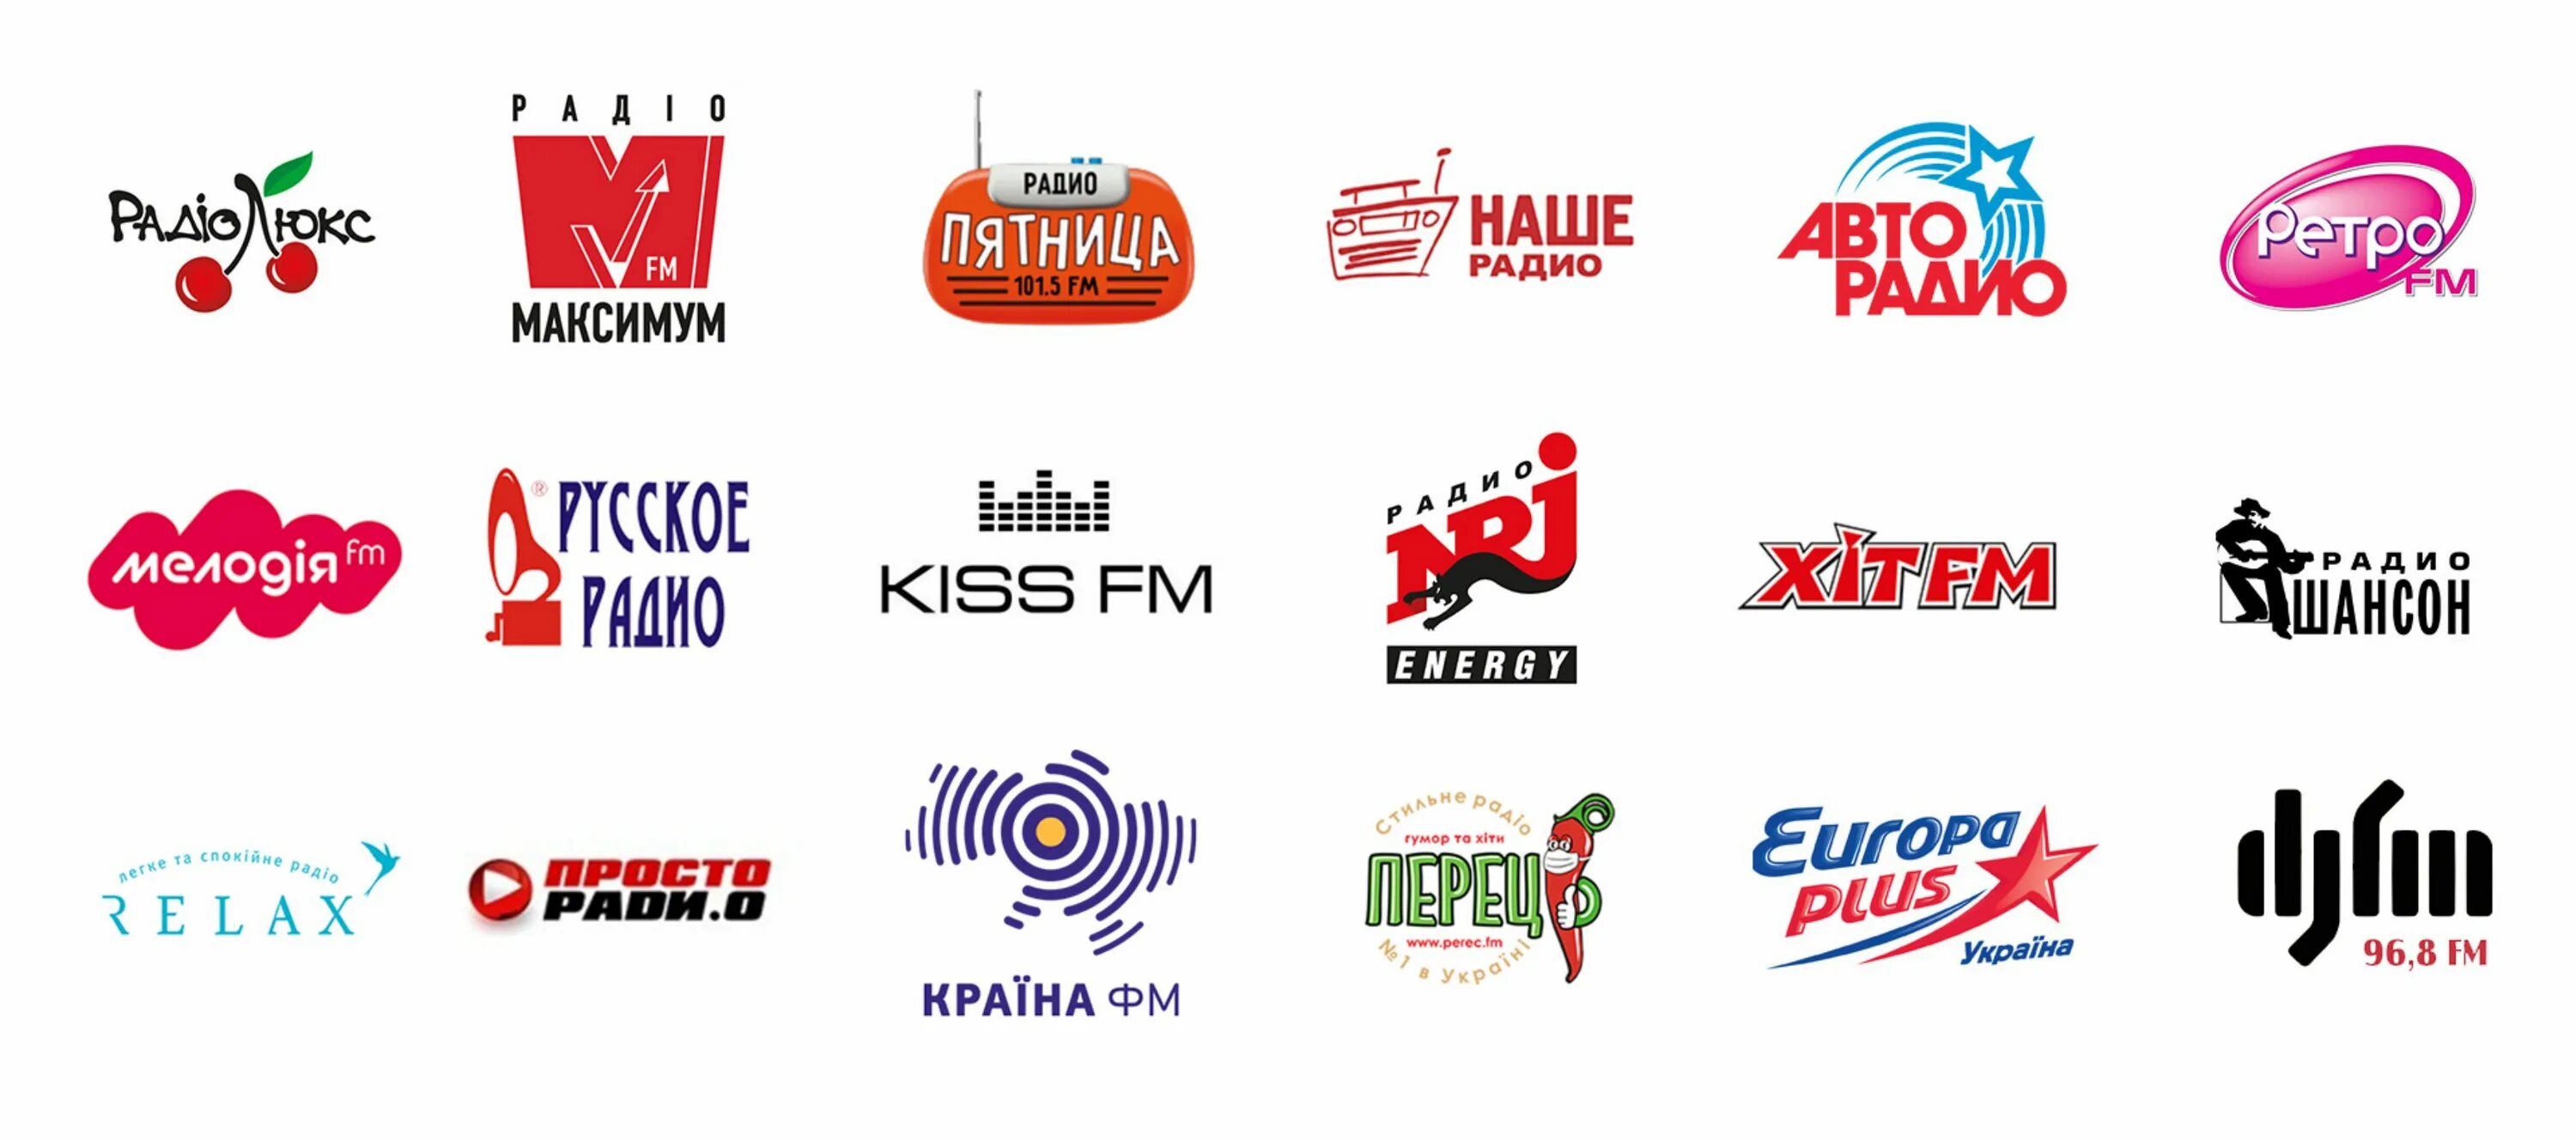 Хит ФМ. Логотип радио хит ФМ. Рекламные компании на радиостанциях. Логотип украинского радио. Хит фм екатеринбург